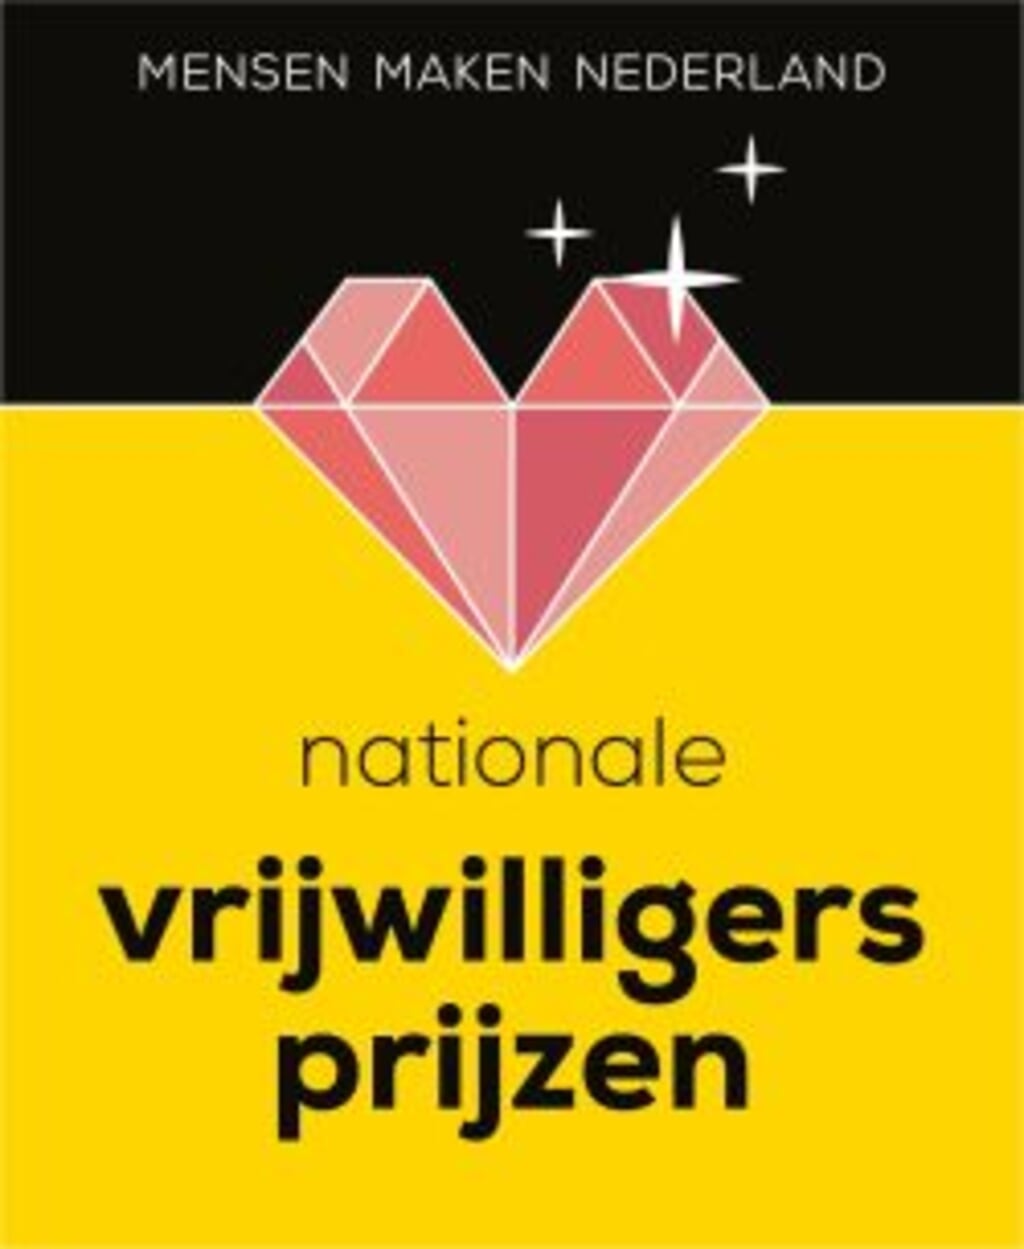 Het logo van de nationale Vrijwilligersprijzen.